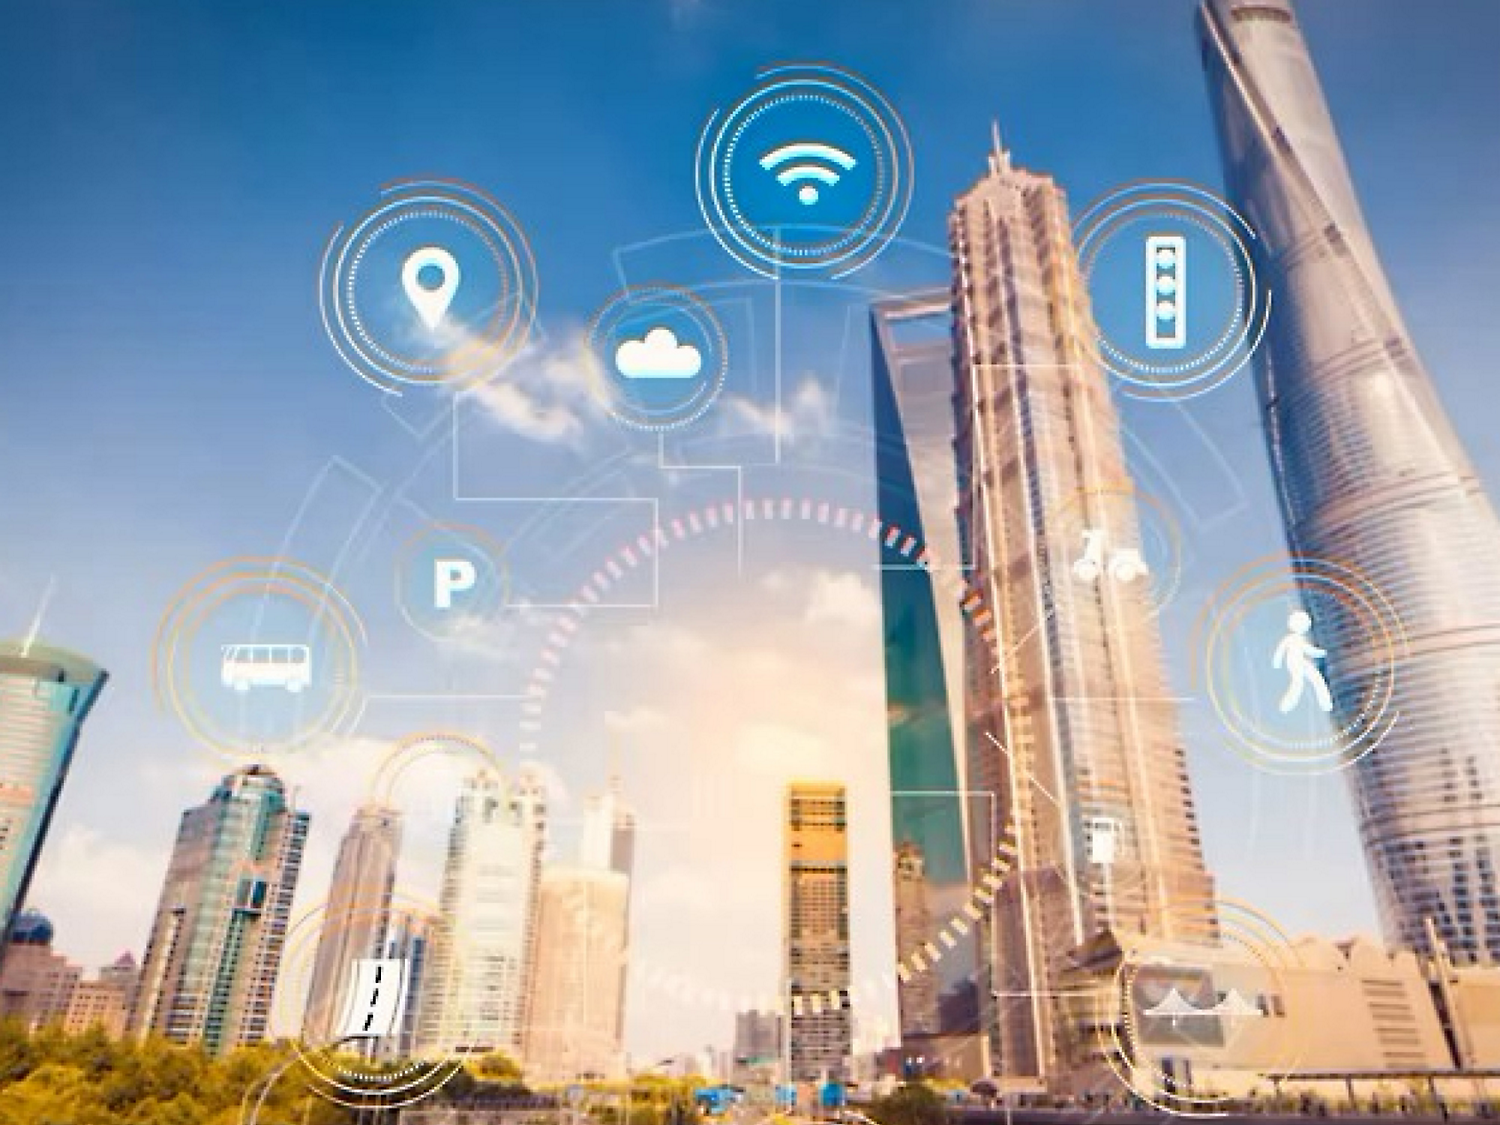 Illustration af en smart by med digitale ikoner, der repræsenterer wi-fi, cloudcomputing og andre teknologier med skyskrabere.